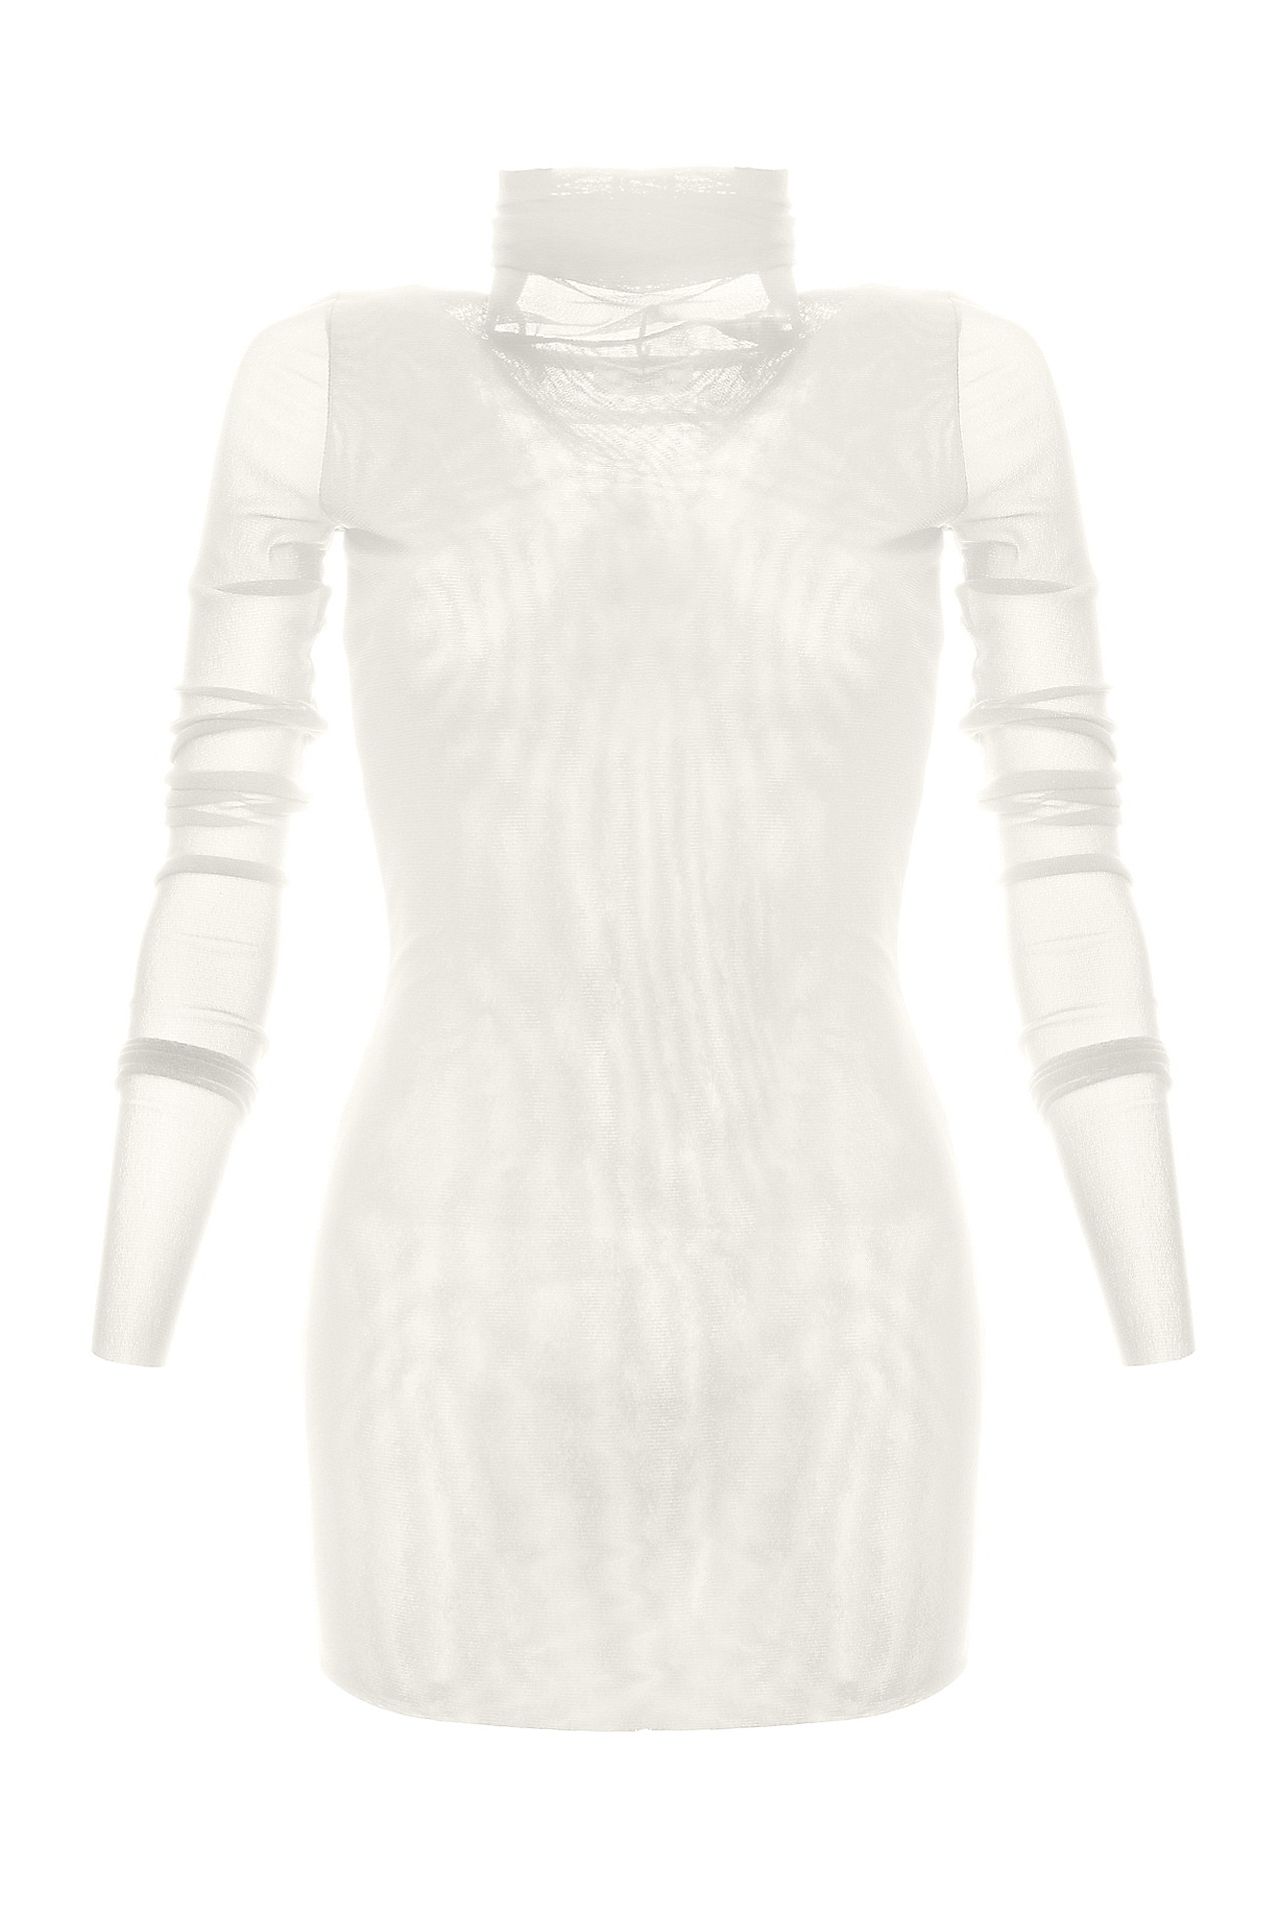 Одежда женская Водолазка NORTHLAND (UE0315/11.1). Купить за 4900 руб.